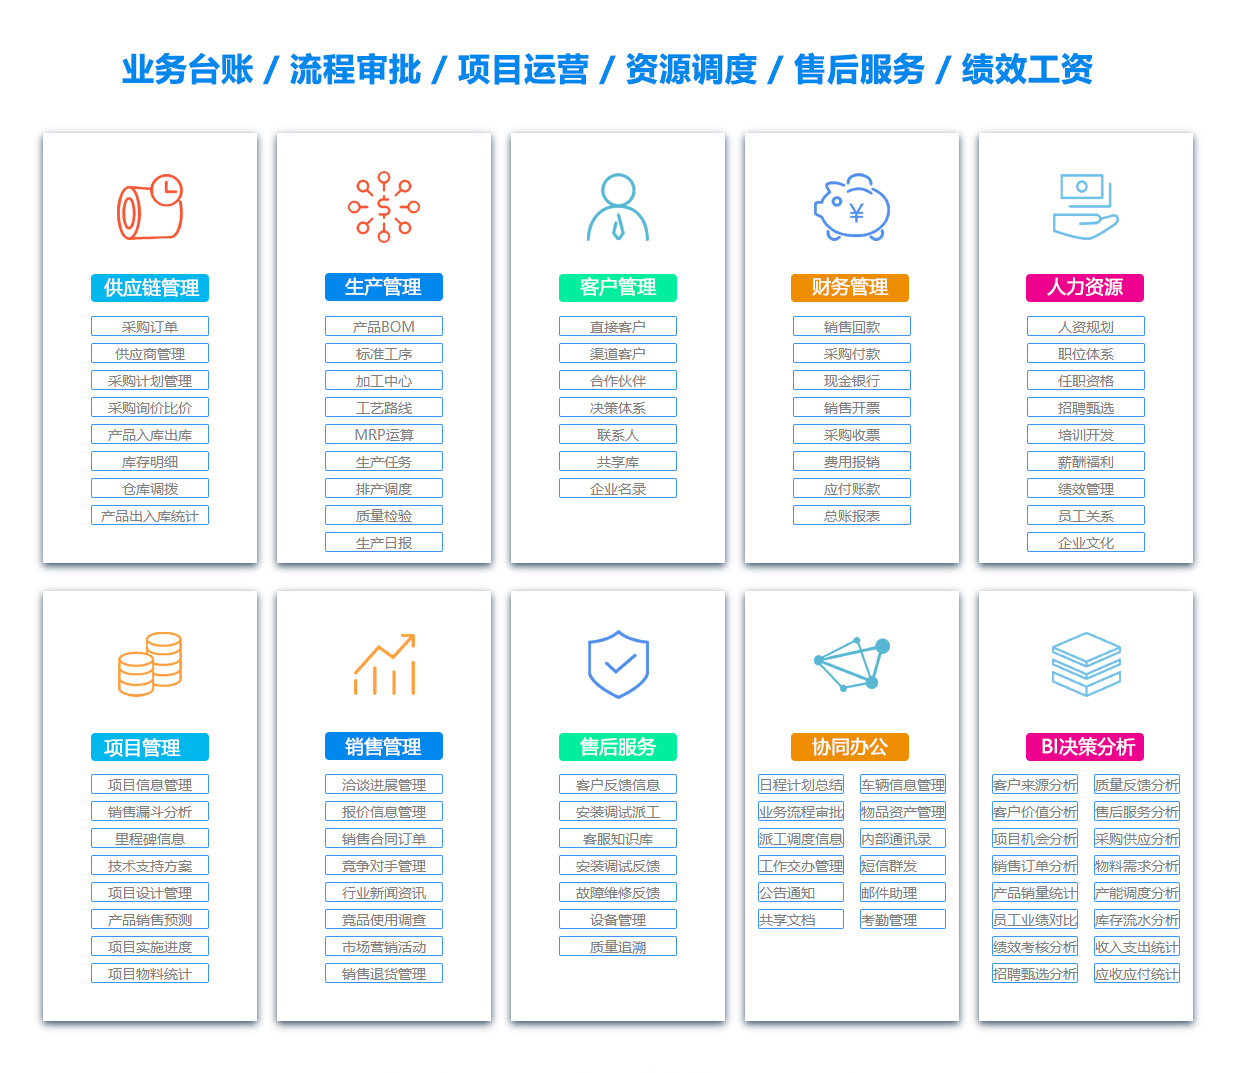 上海供应链软件